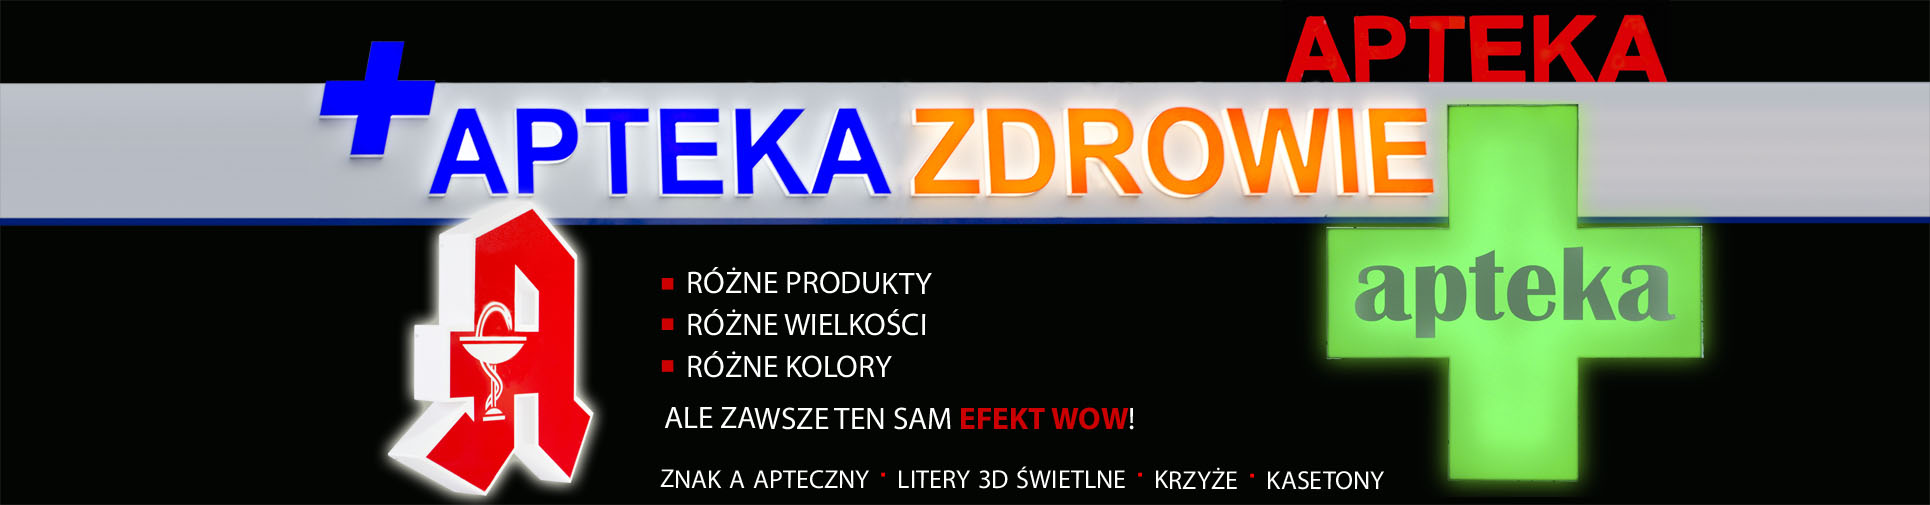 brandekor_banerglowny_reklama_apteka_krzyz_apteczny copy.jpg